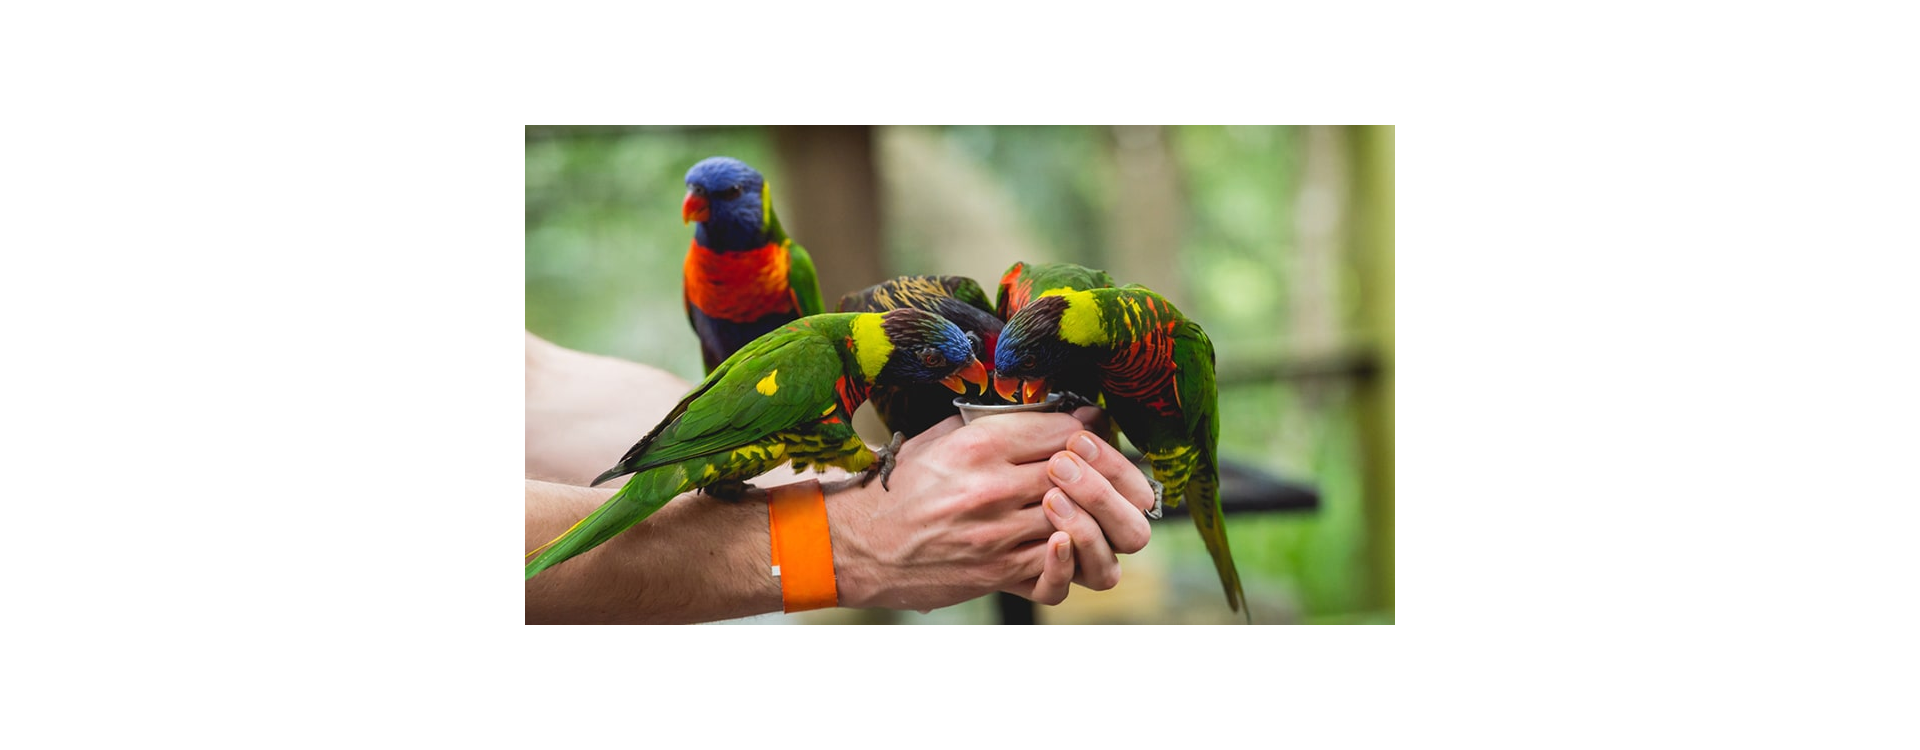 Γιατί οι παπαγάλοι χρειάζονται την πρωτεΐνη στη διατροφή τους;